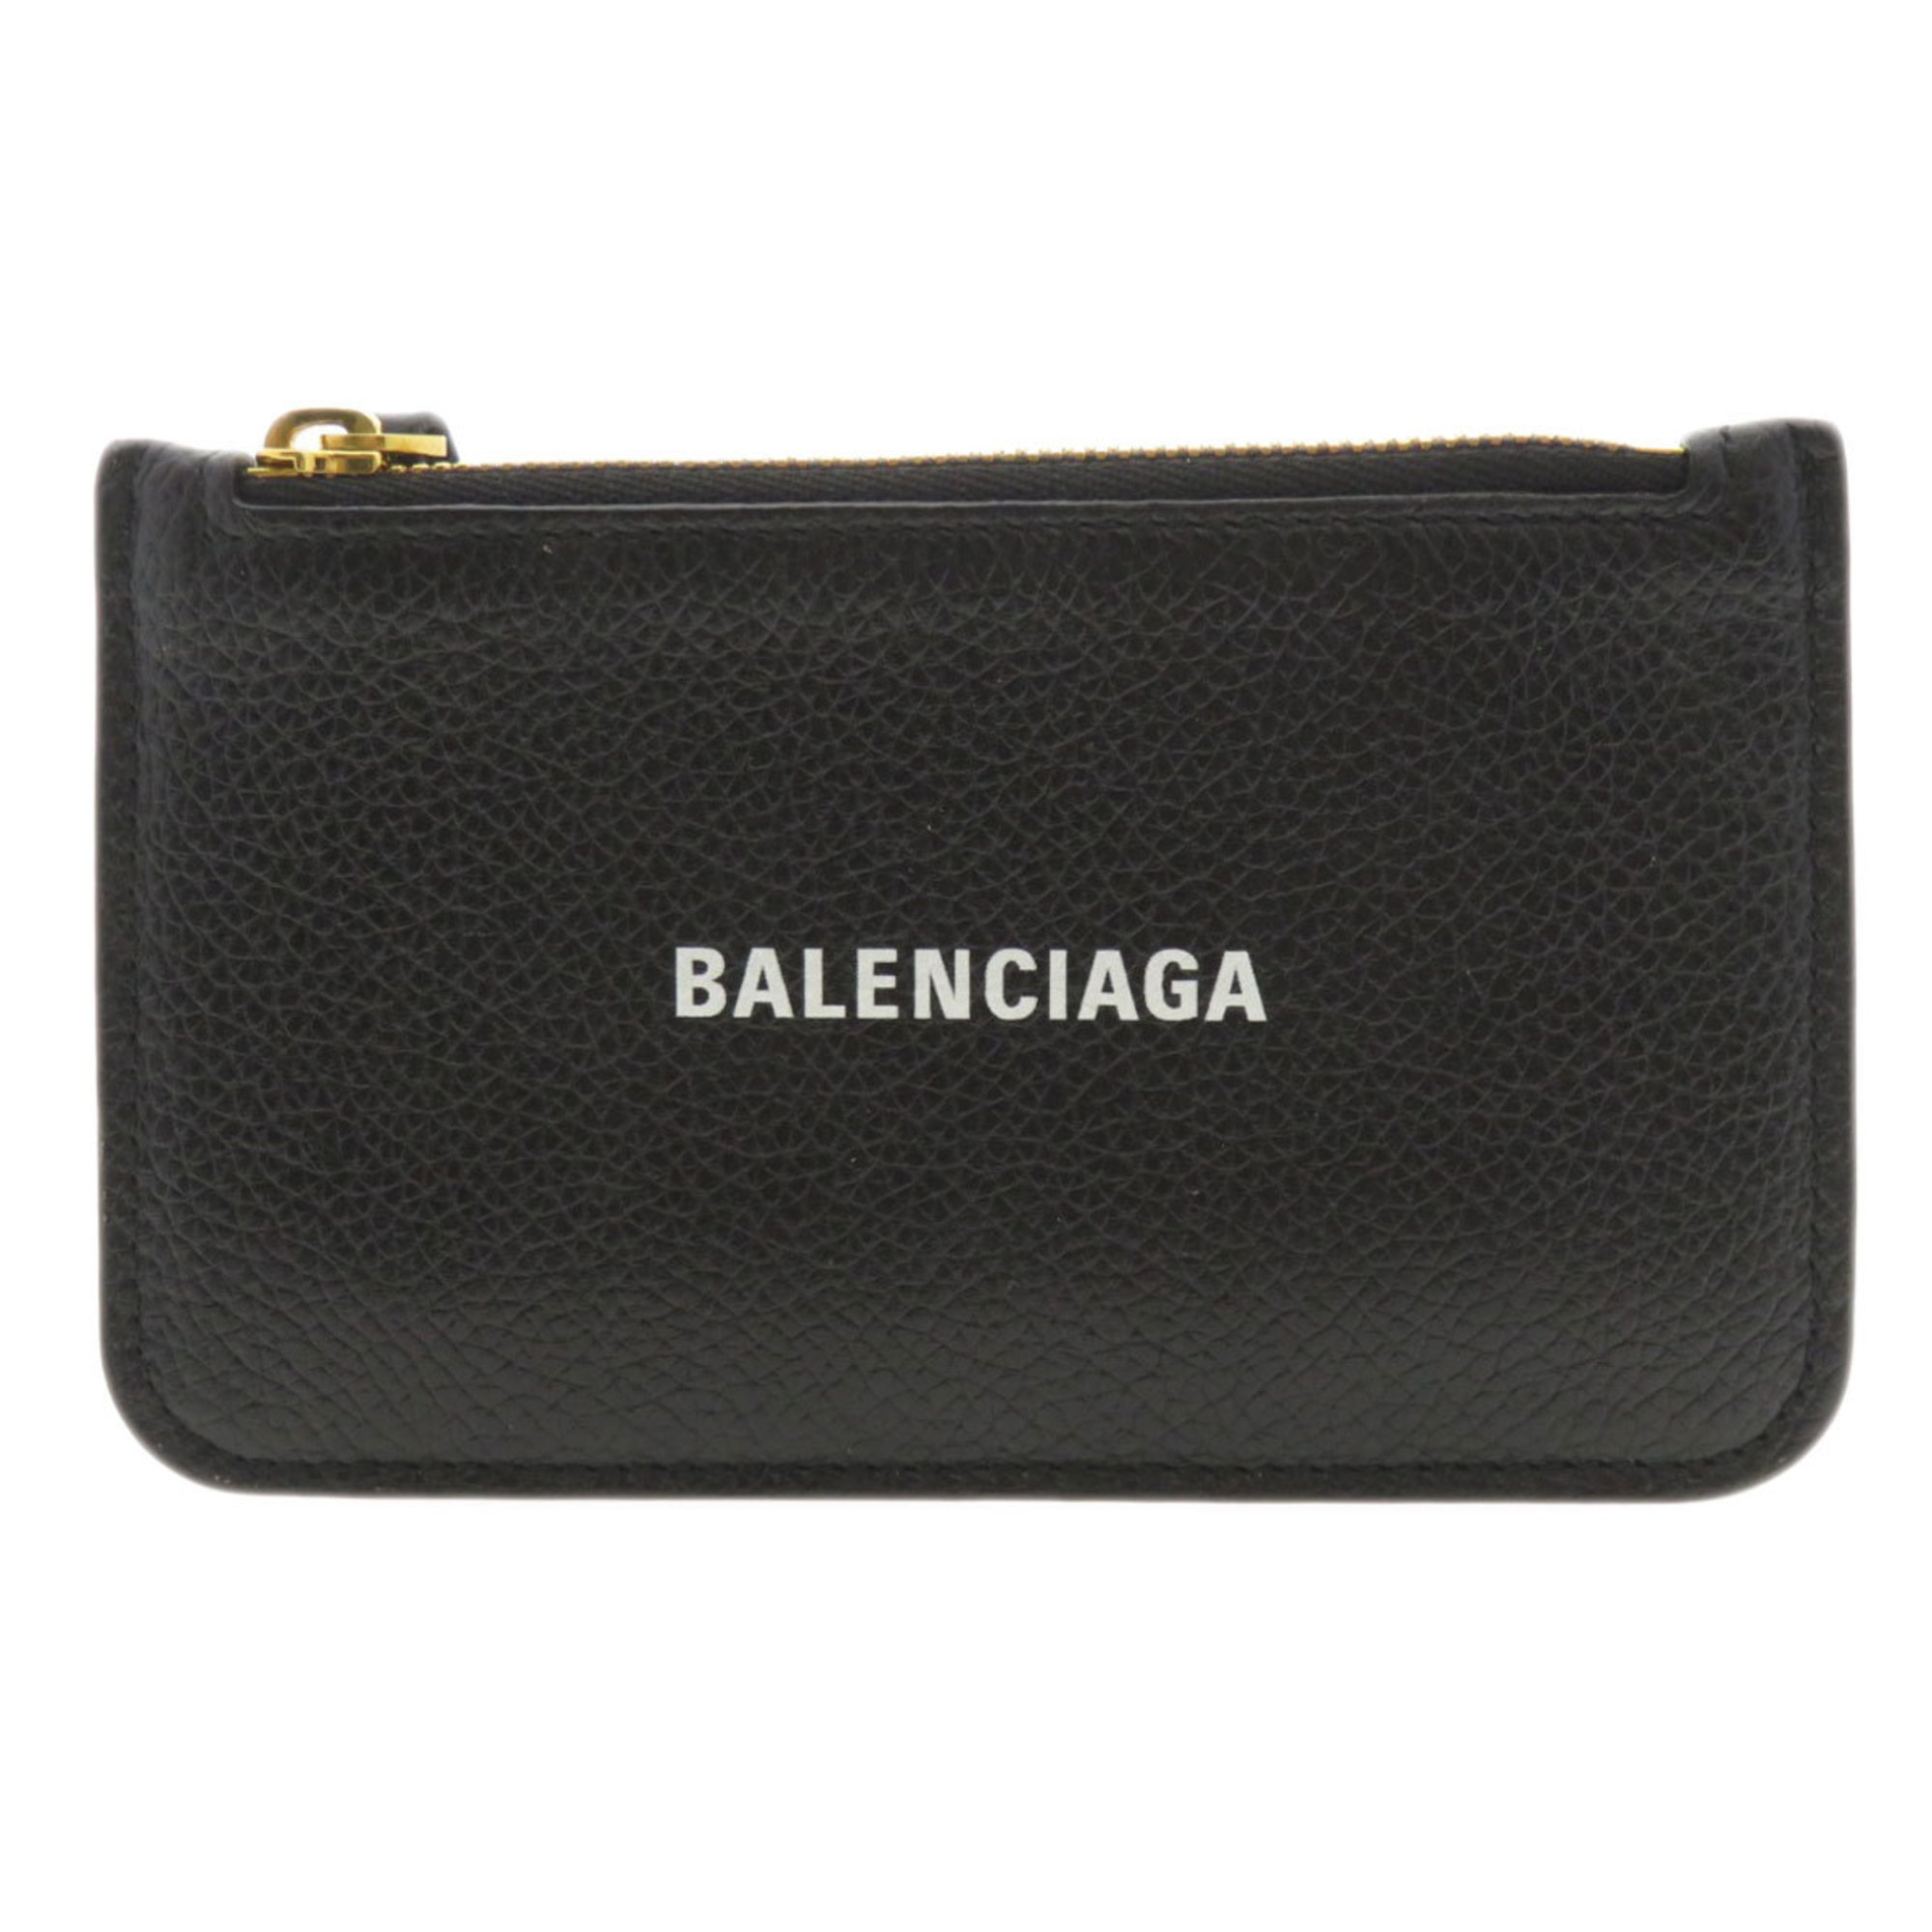 Balenciaga 594214 Motif Wallet/Coin Case Calf Leather Women's